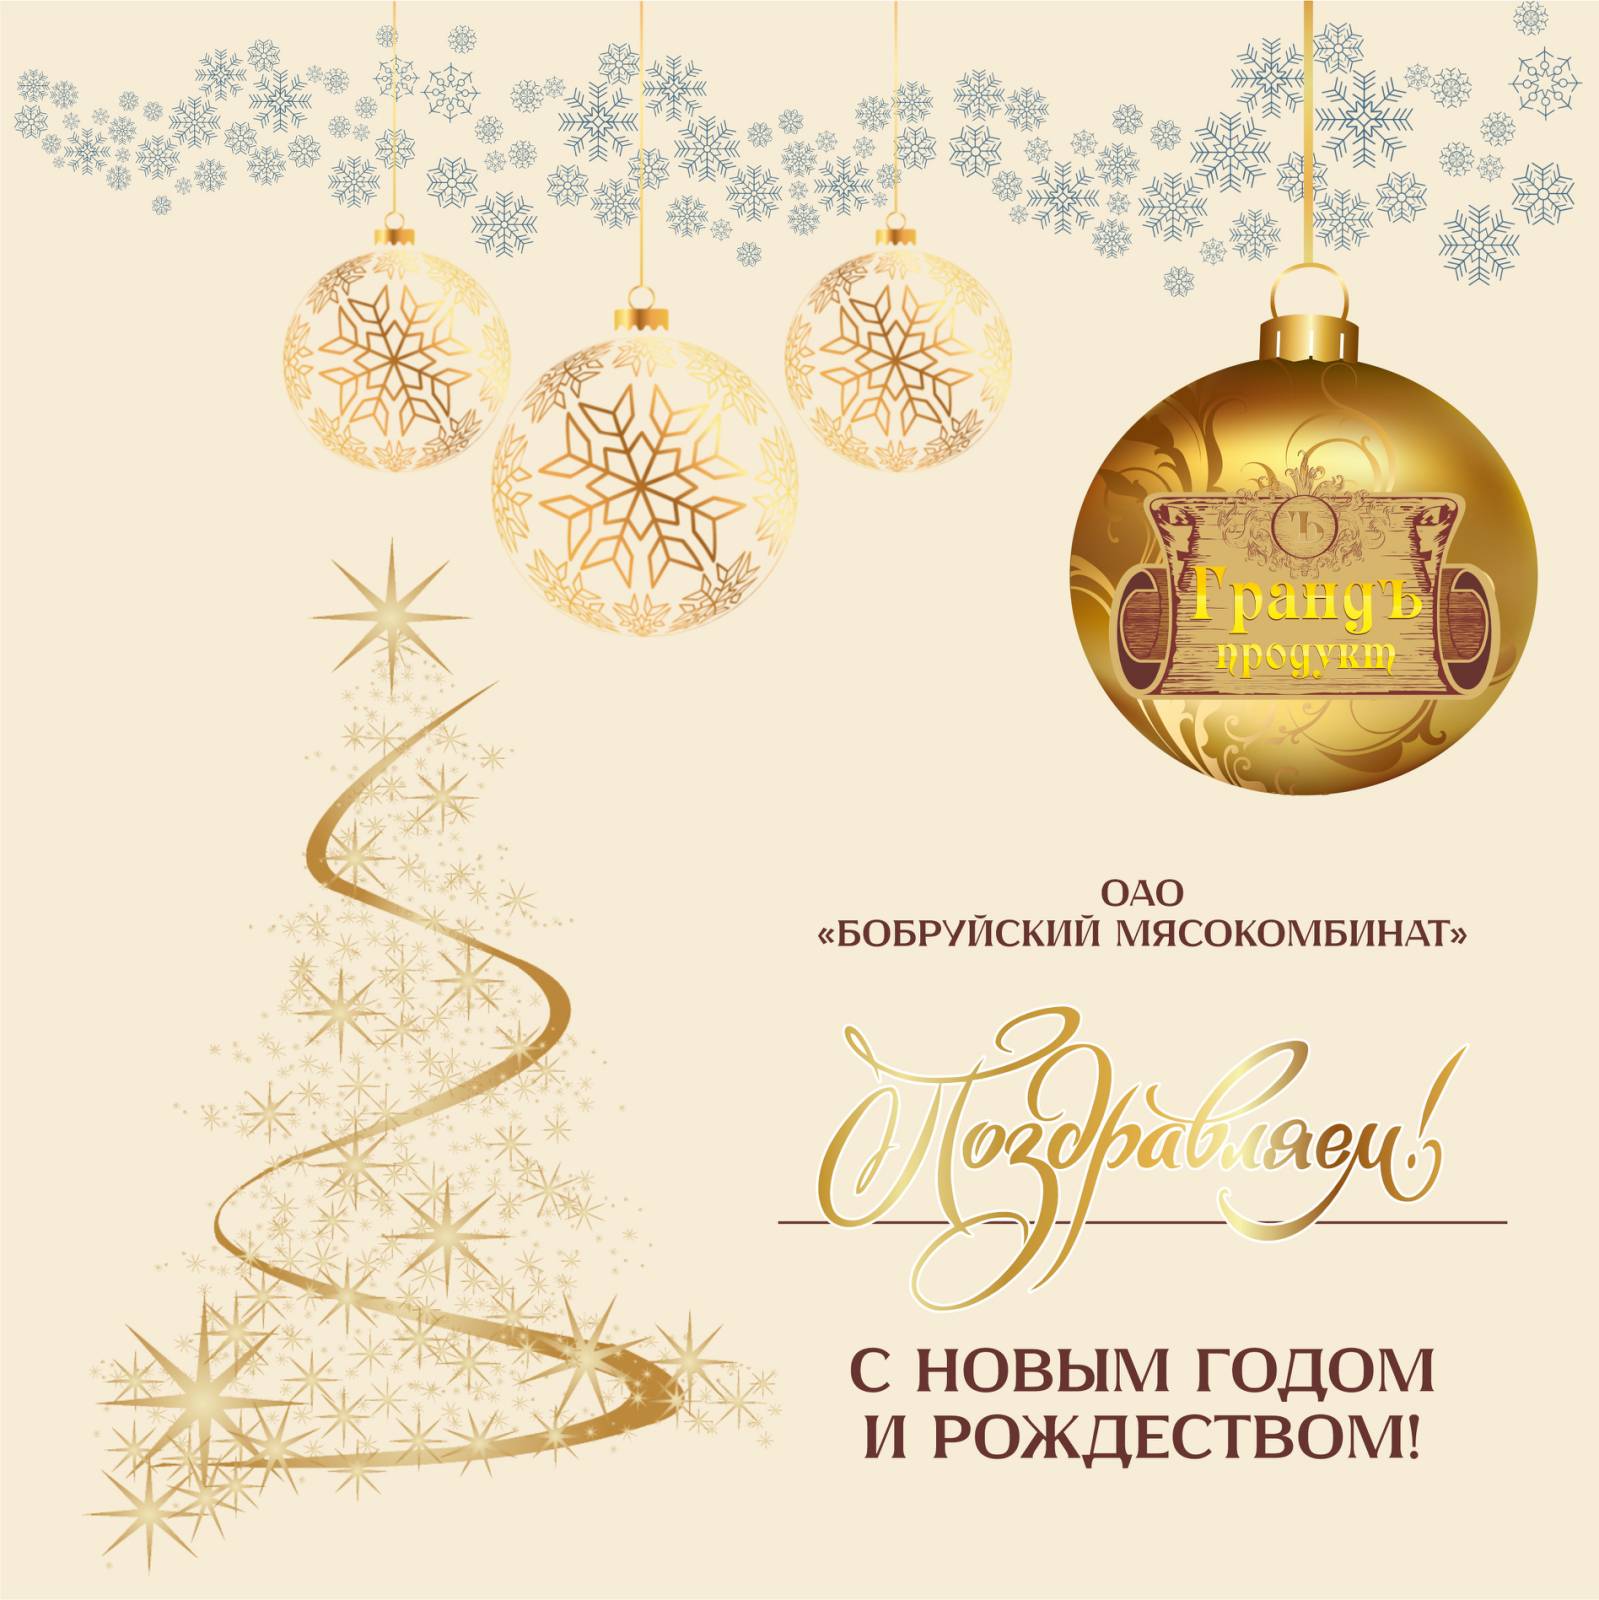 ОАО “Бобруйский мясокомбинат” поздравляет с наступающим Новым Годом и Рождеством!